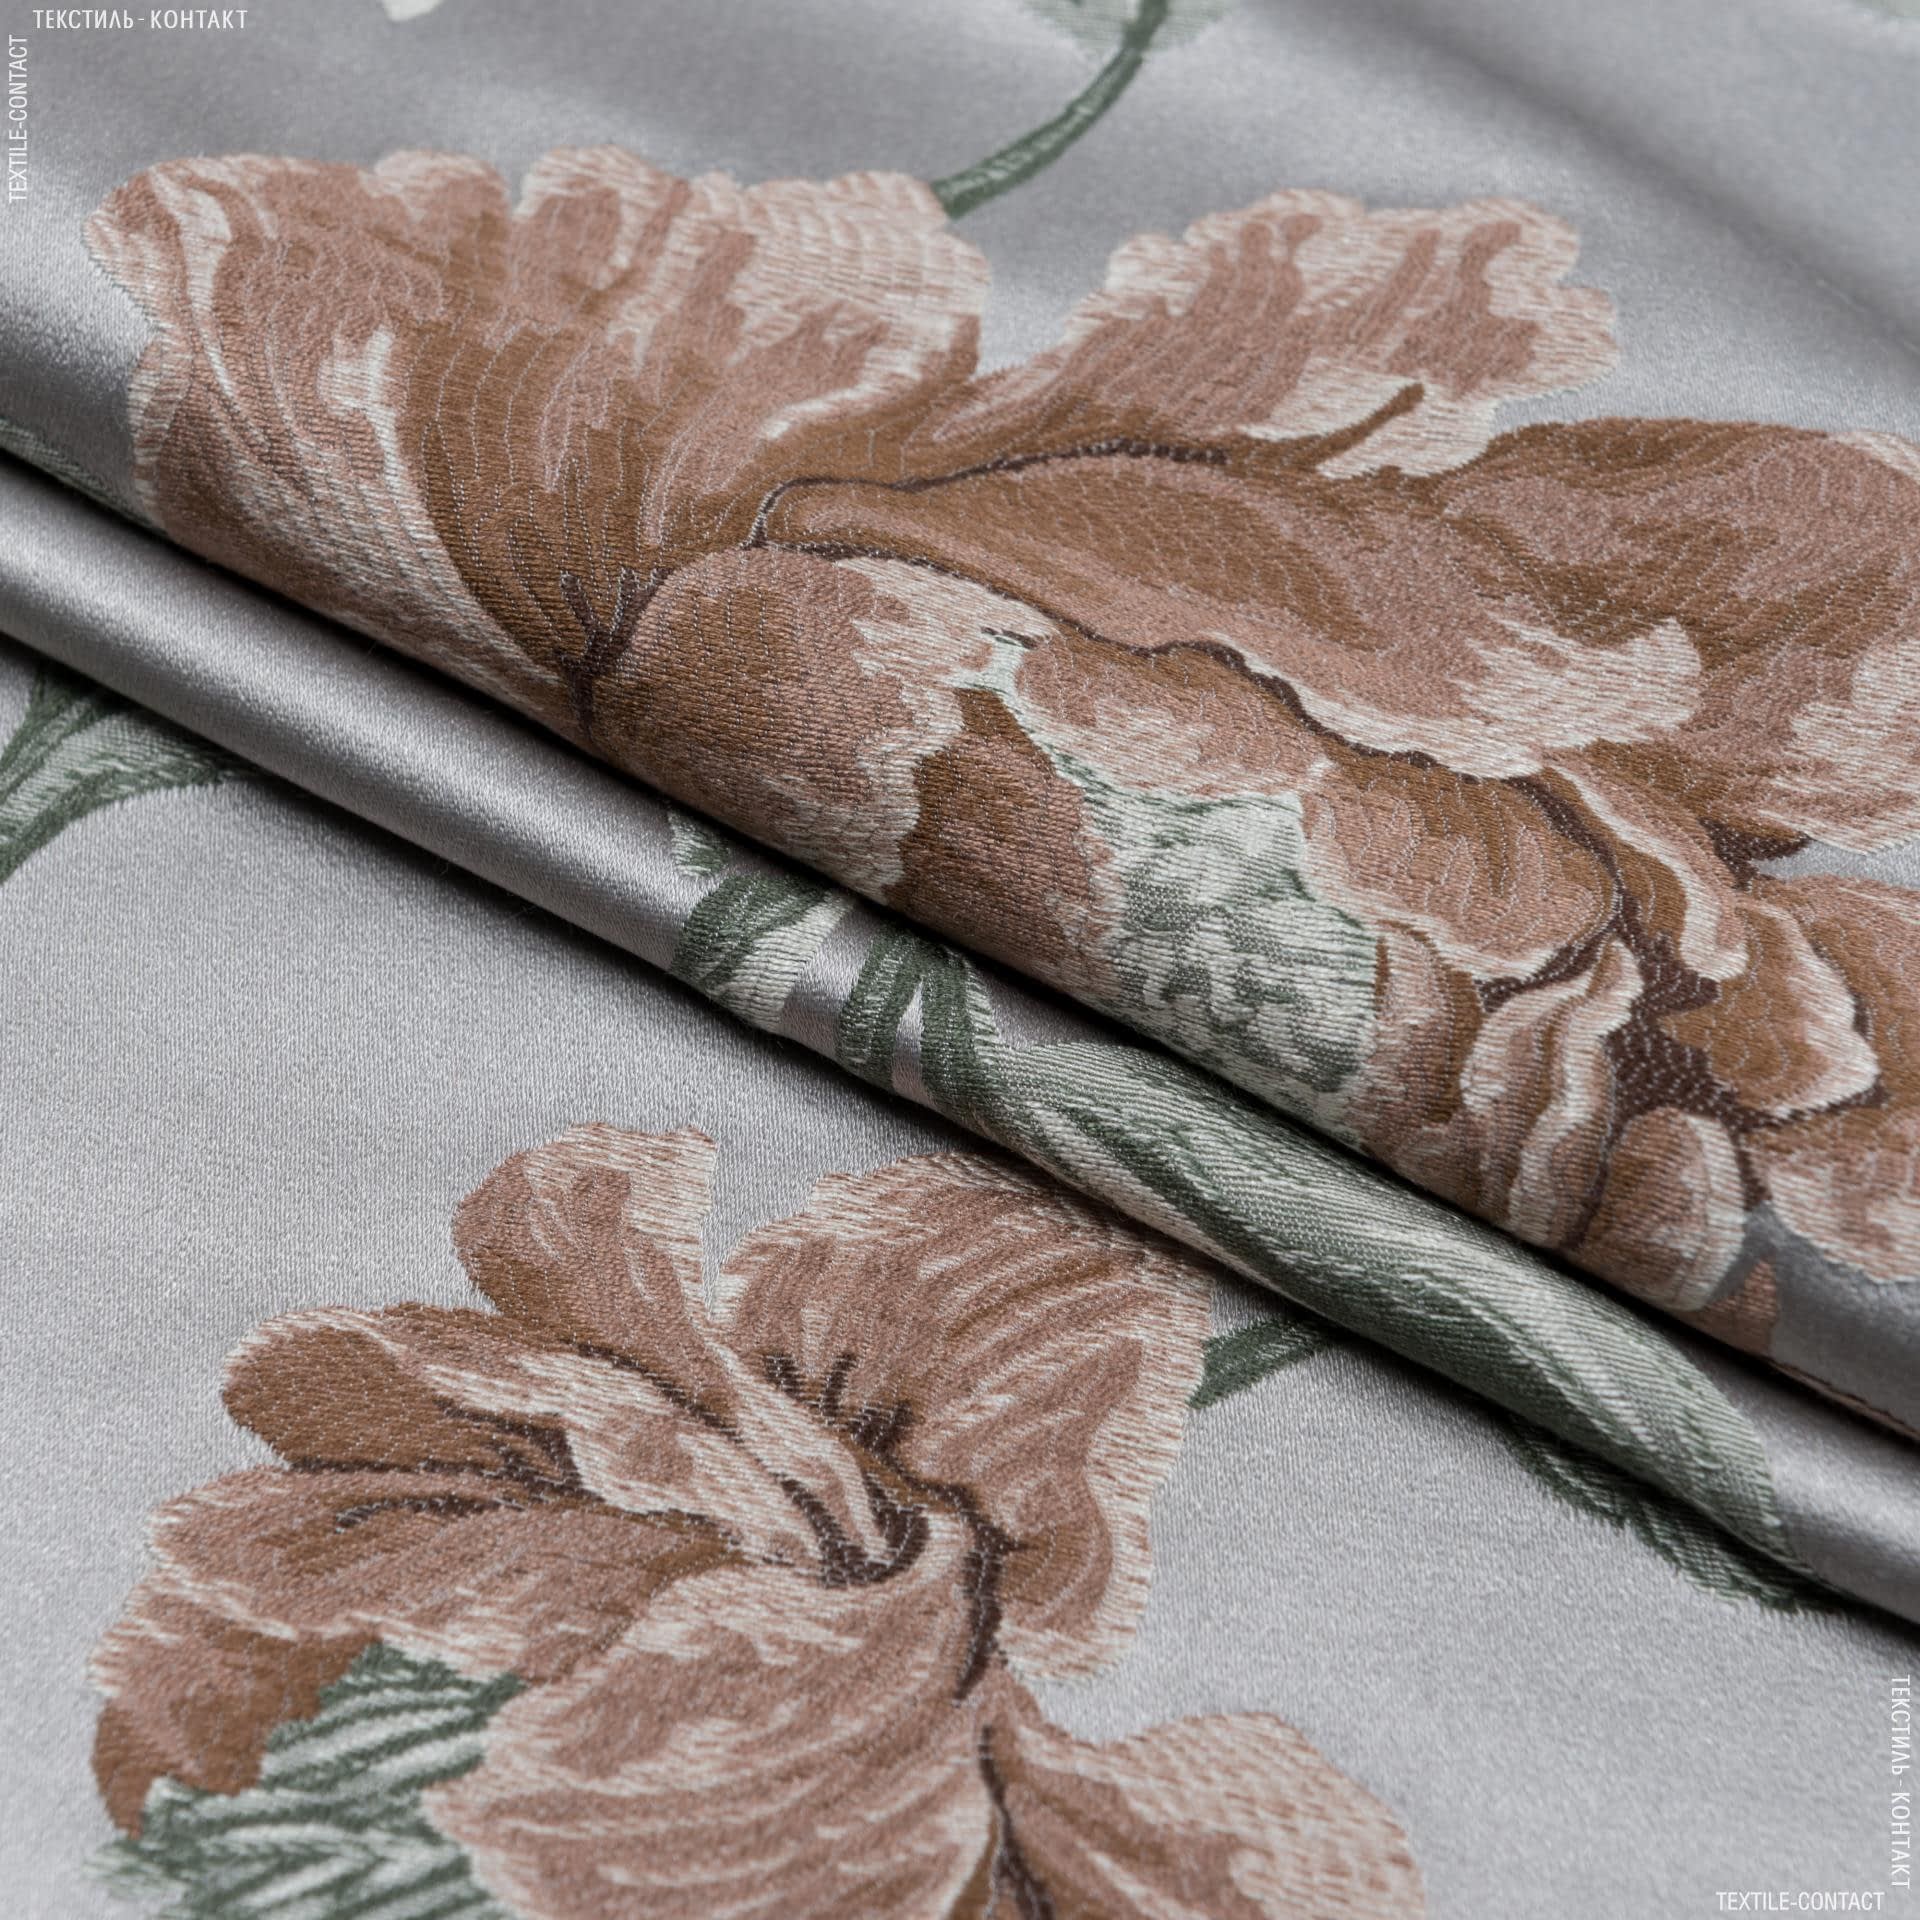 Ткани портьерные ткани - Декоративная ткань Палми / Palmi цветы т.бежевые, голубые фон серый